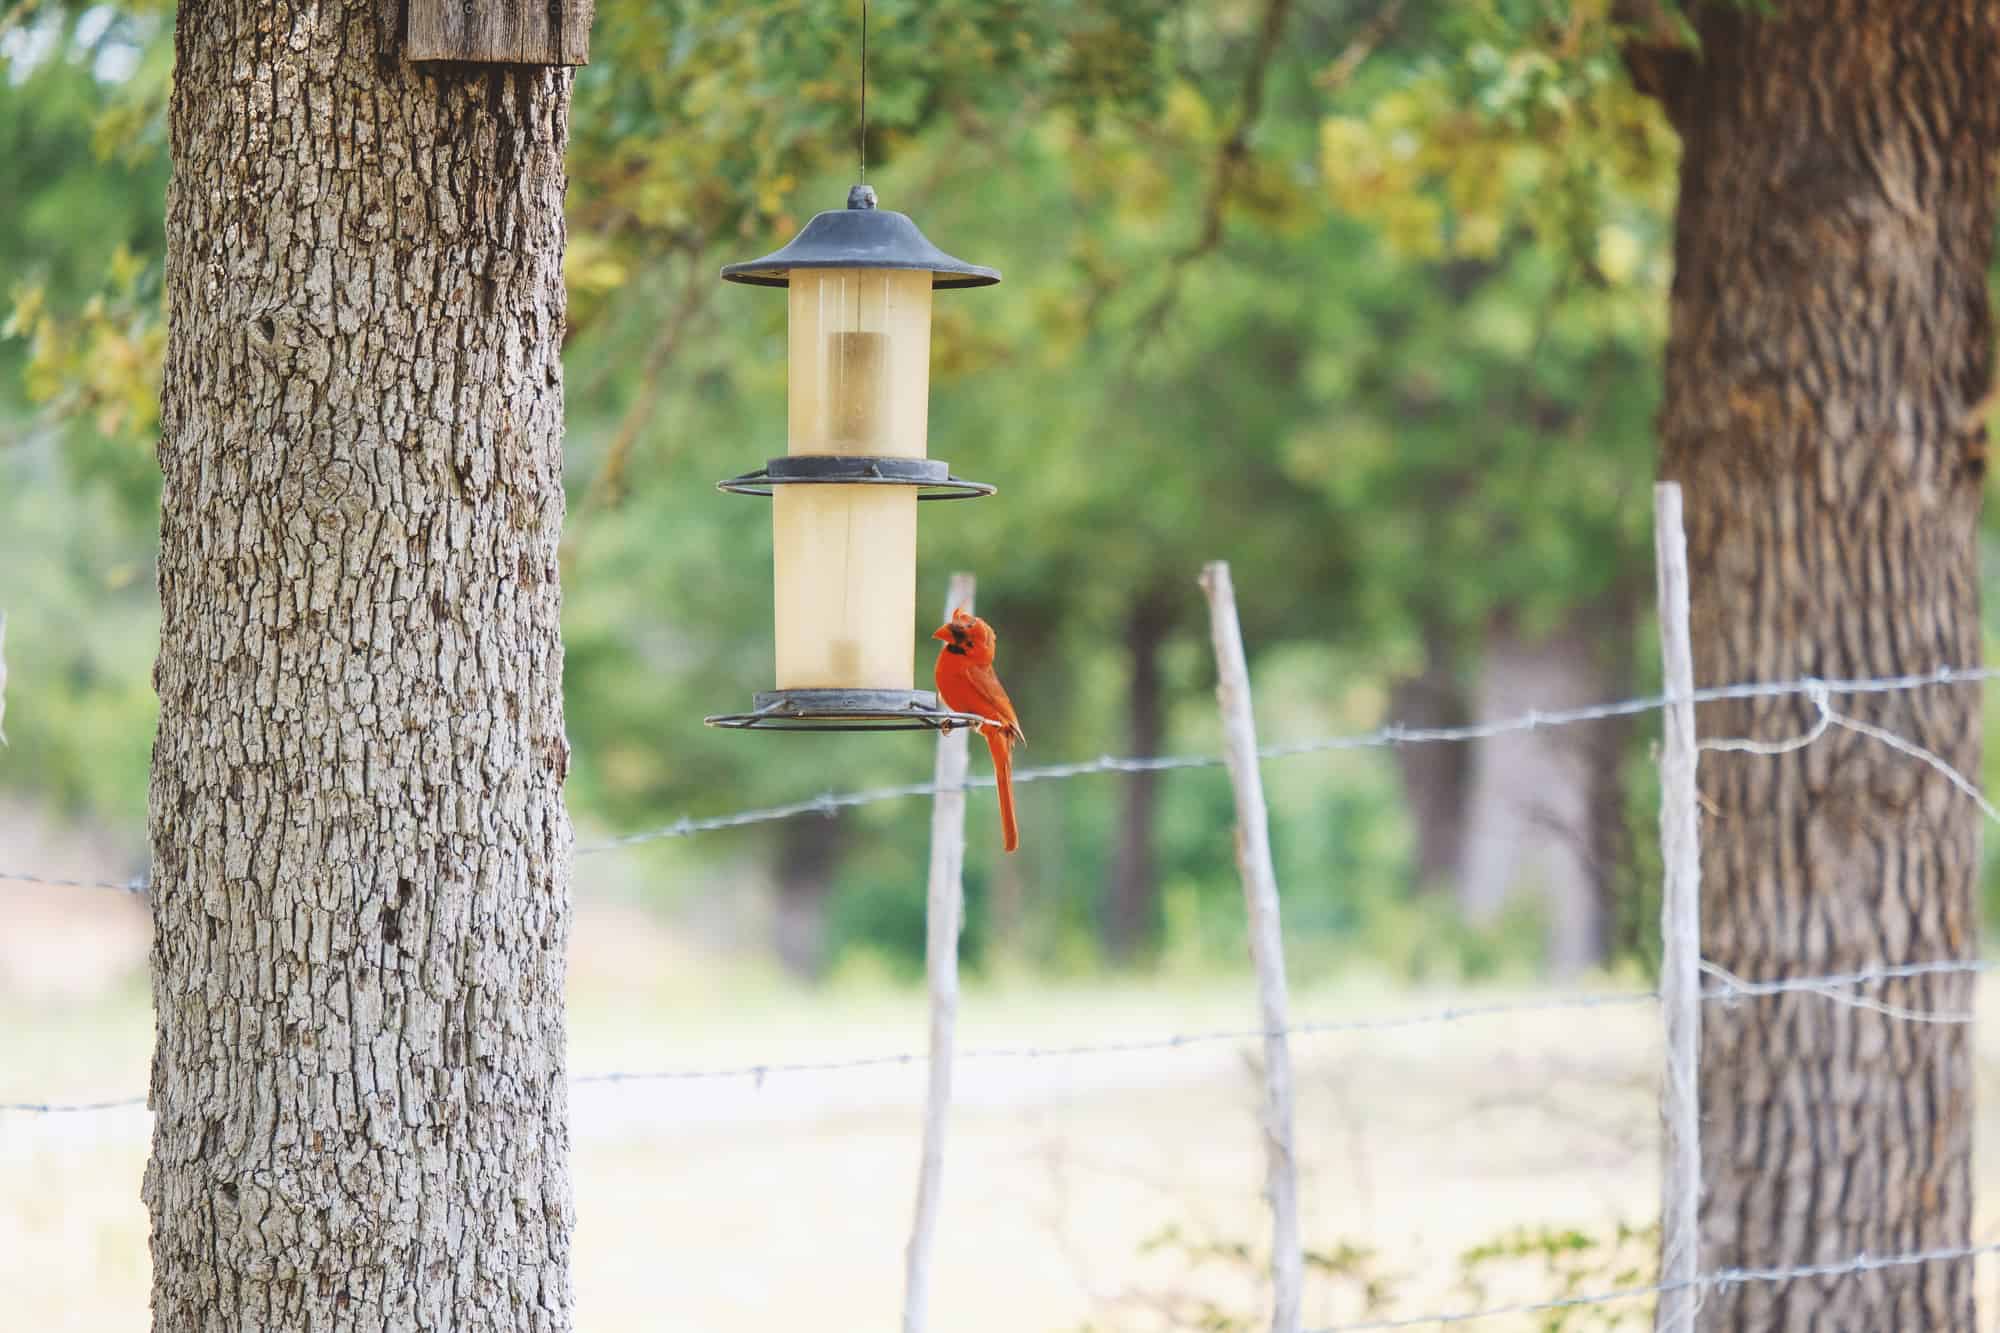 Cardinal bird at feeder in yard